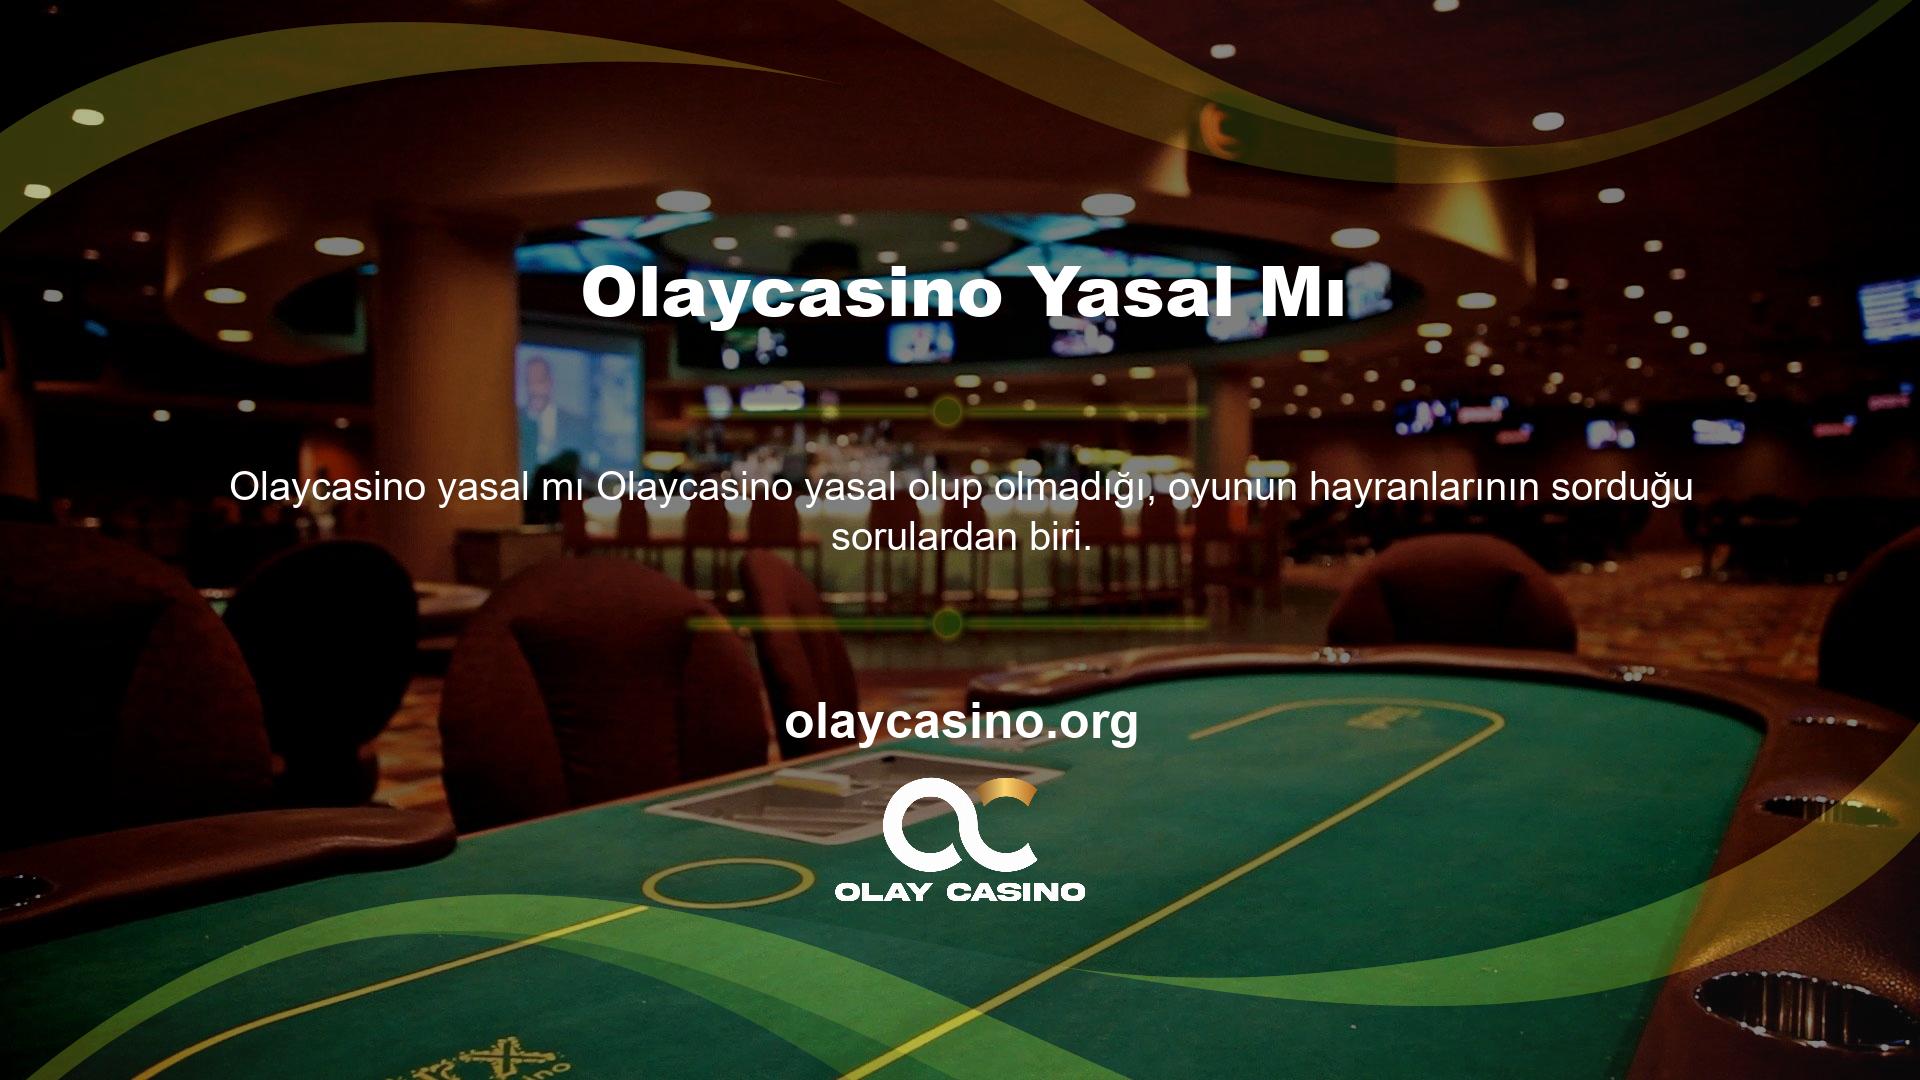 Casino siteleri yasalarımıza göre yasa dışıdır